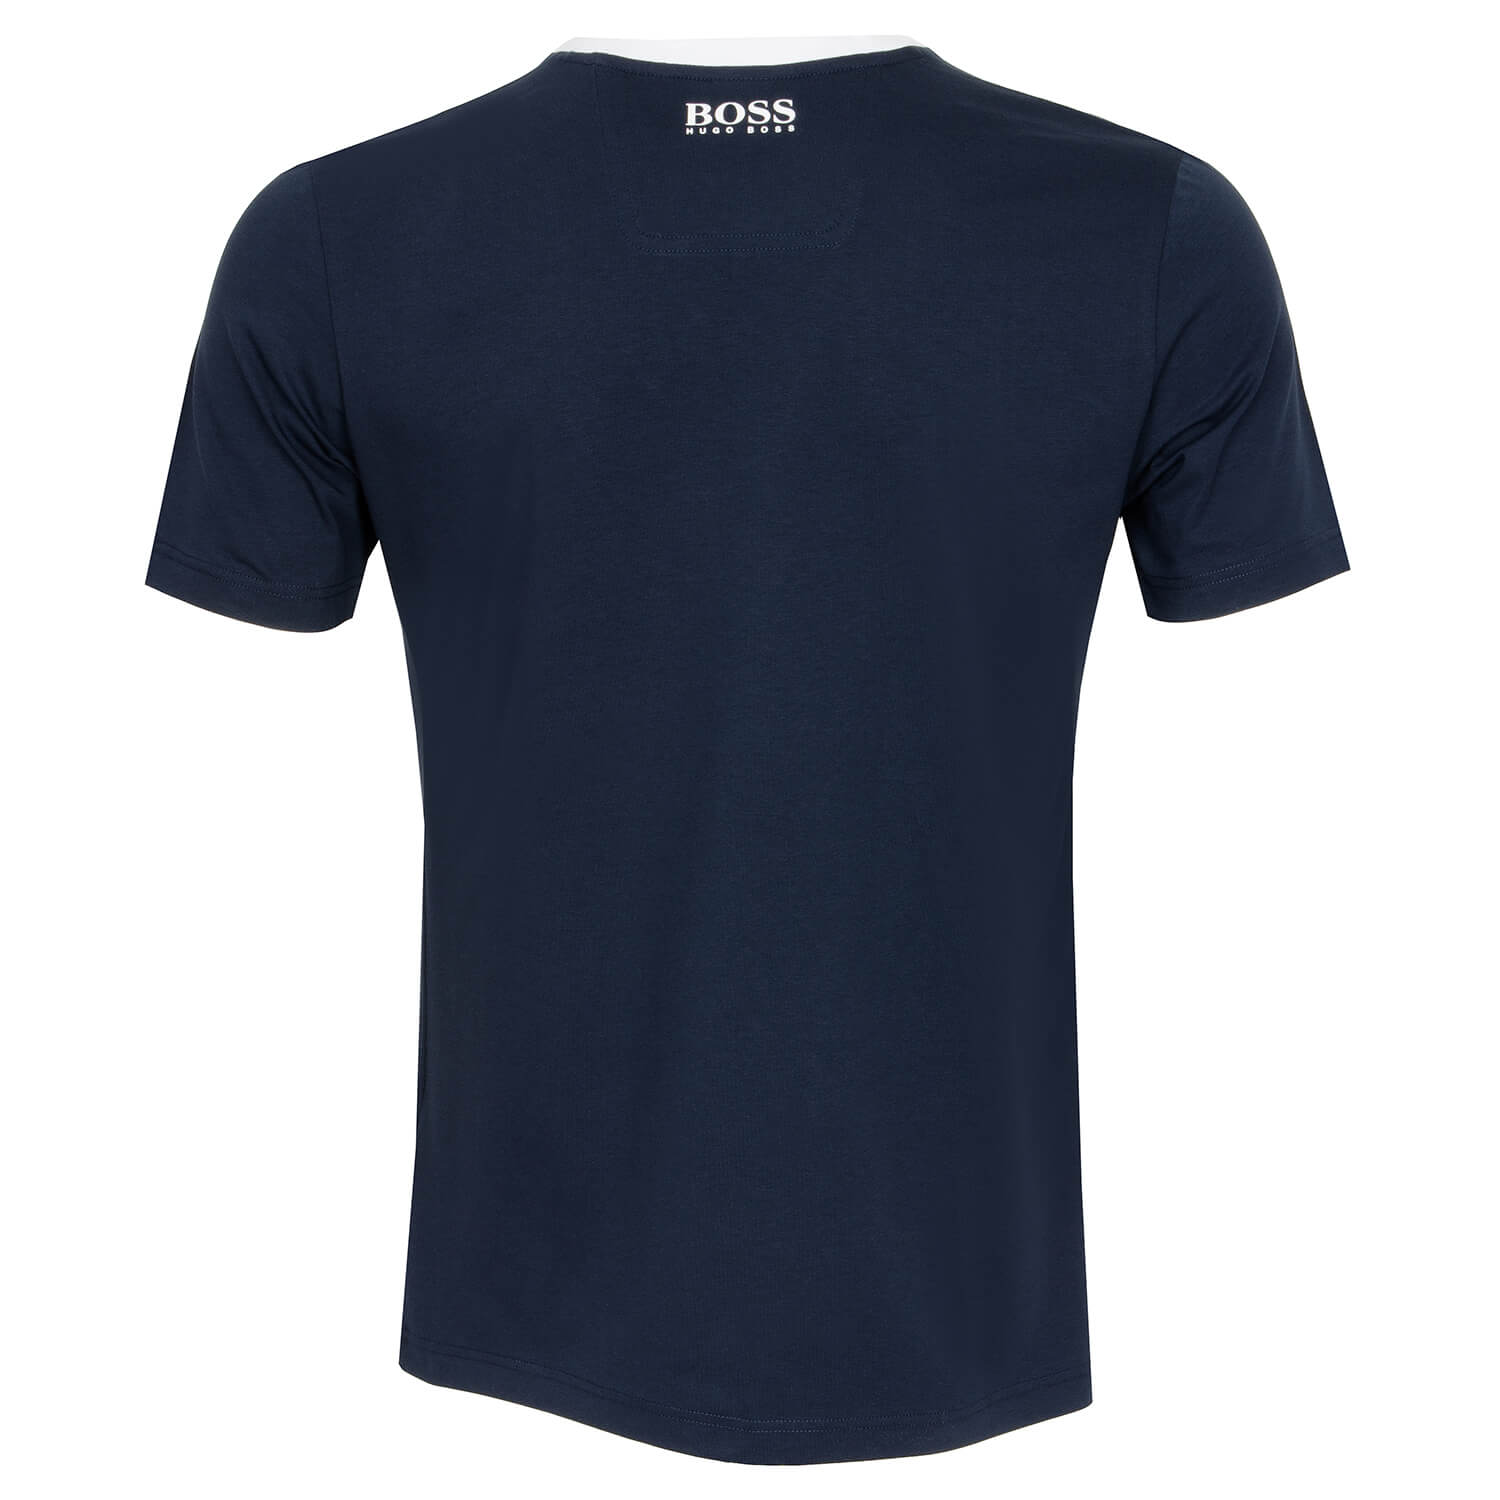 HUGO BOSS Tee BO T-Shirt Navy | Scottsdale Golf